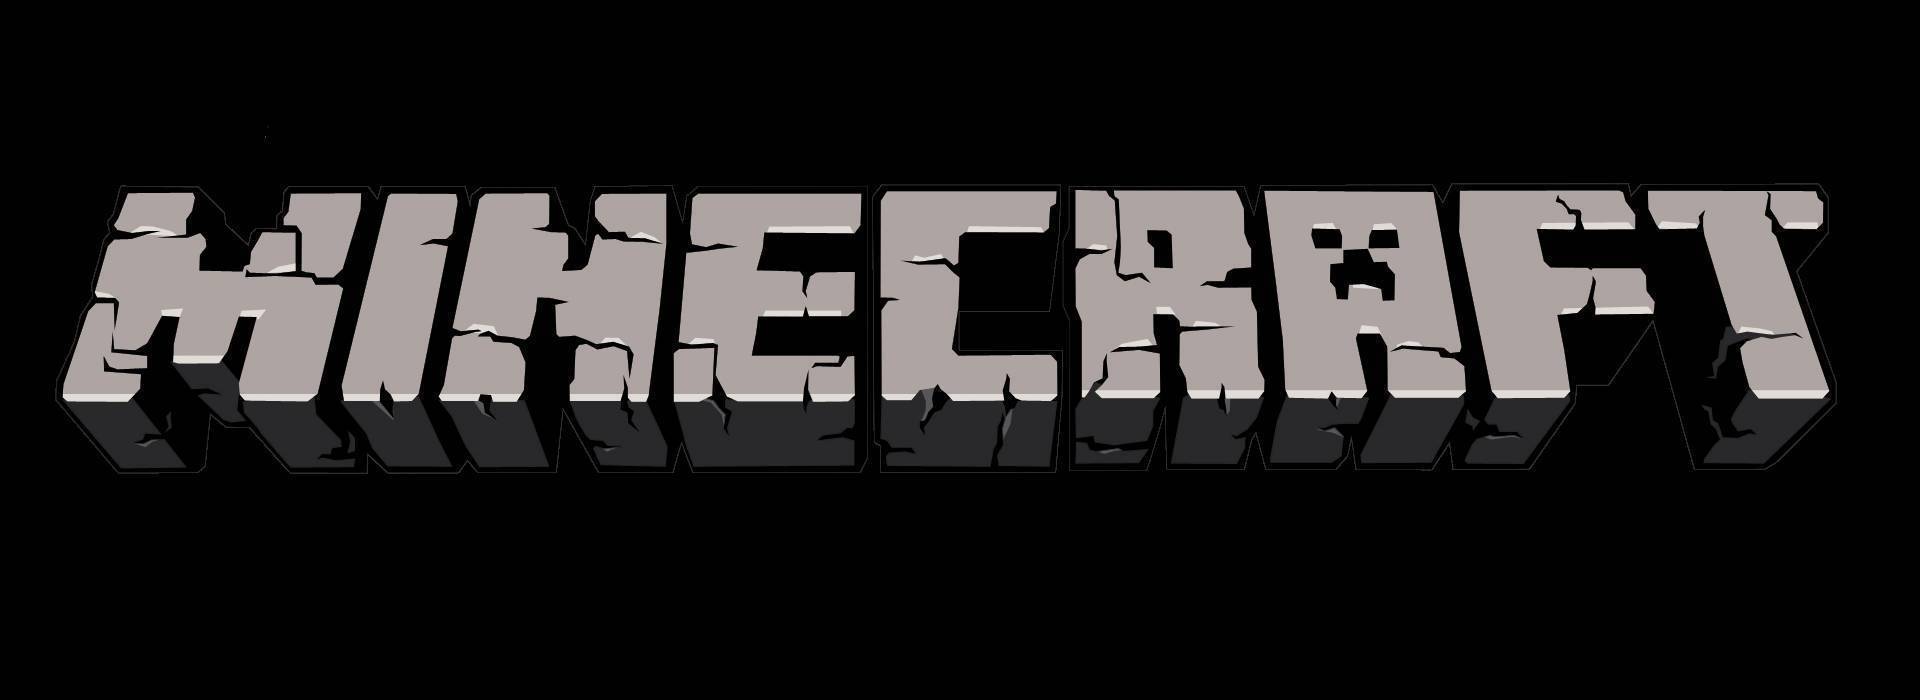 Micraft Logo - Minecraft-logo - UzerFriendly